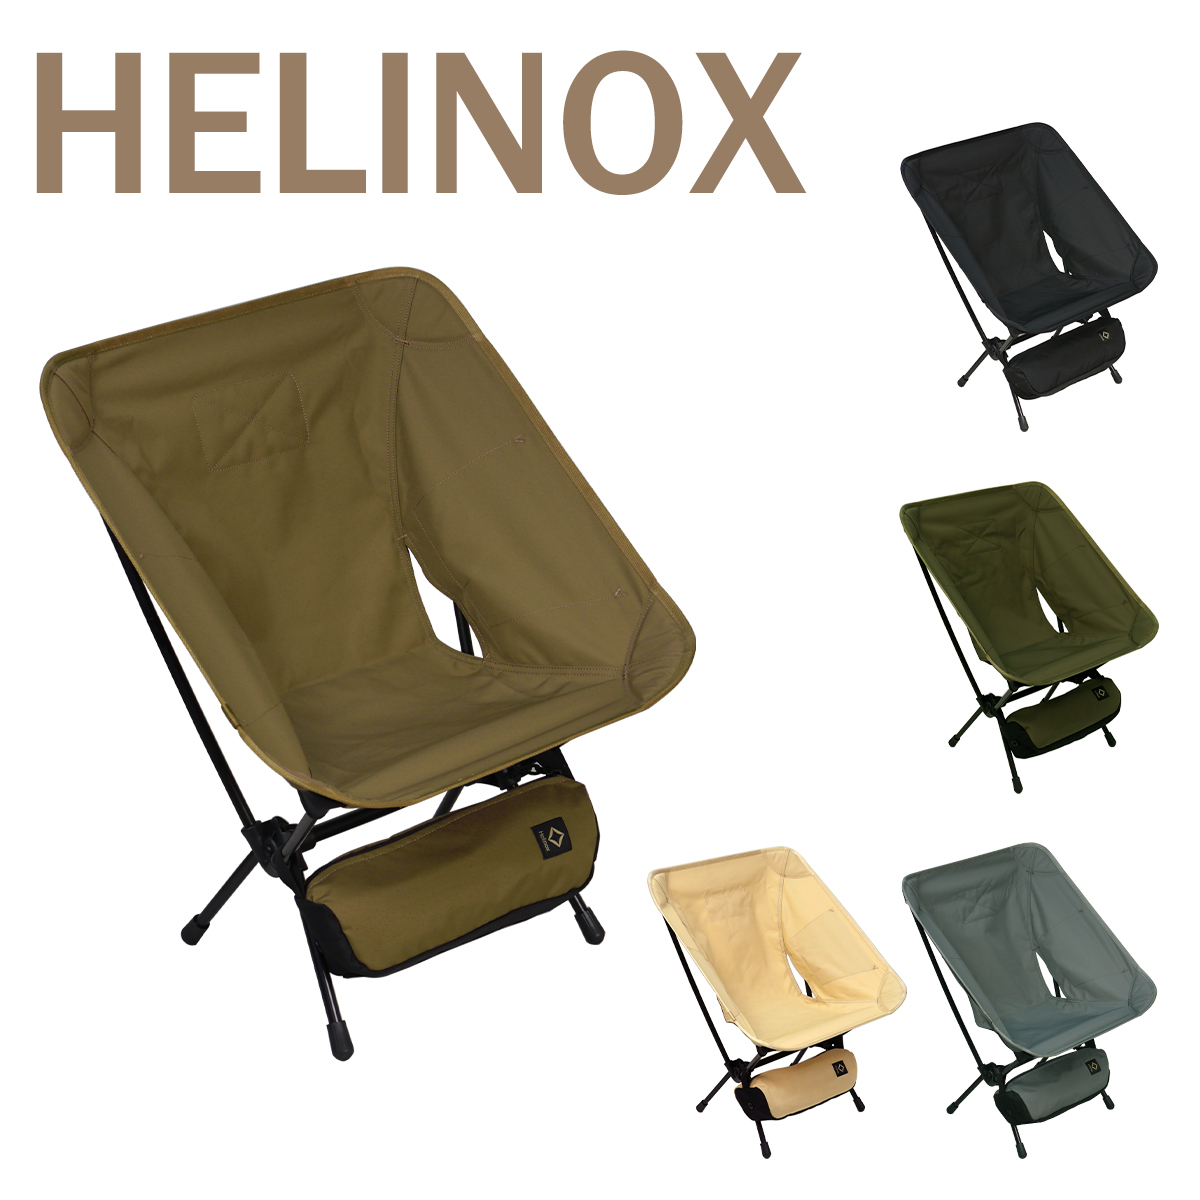 キャンプ用チェア イス アウトドア いす SALE 71%OFF [正規販売店] リビング用 椅子 コンパクト フェス Tactical 折りたたみチェア Chair 10 タクティカルチェア 4 ポイント5倍 ヘリノックス Helinox